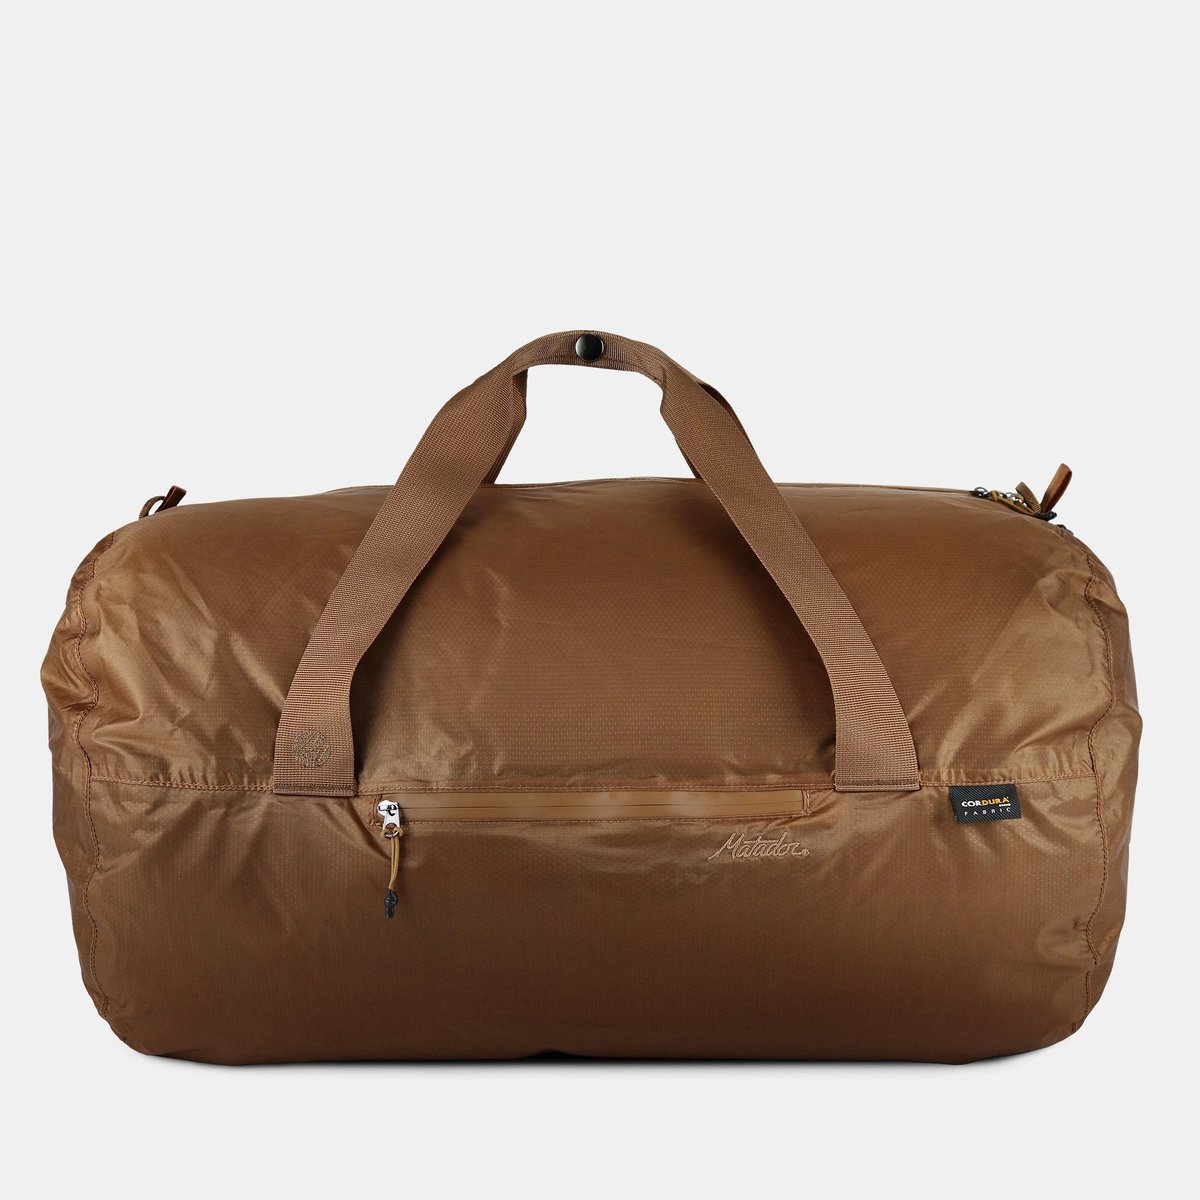 MATADOR - Transit30 2.0 Premium Series Waterproof Folding Travel Bag - 30L - Brown